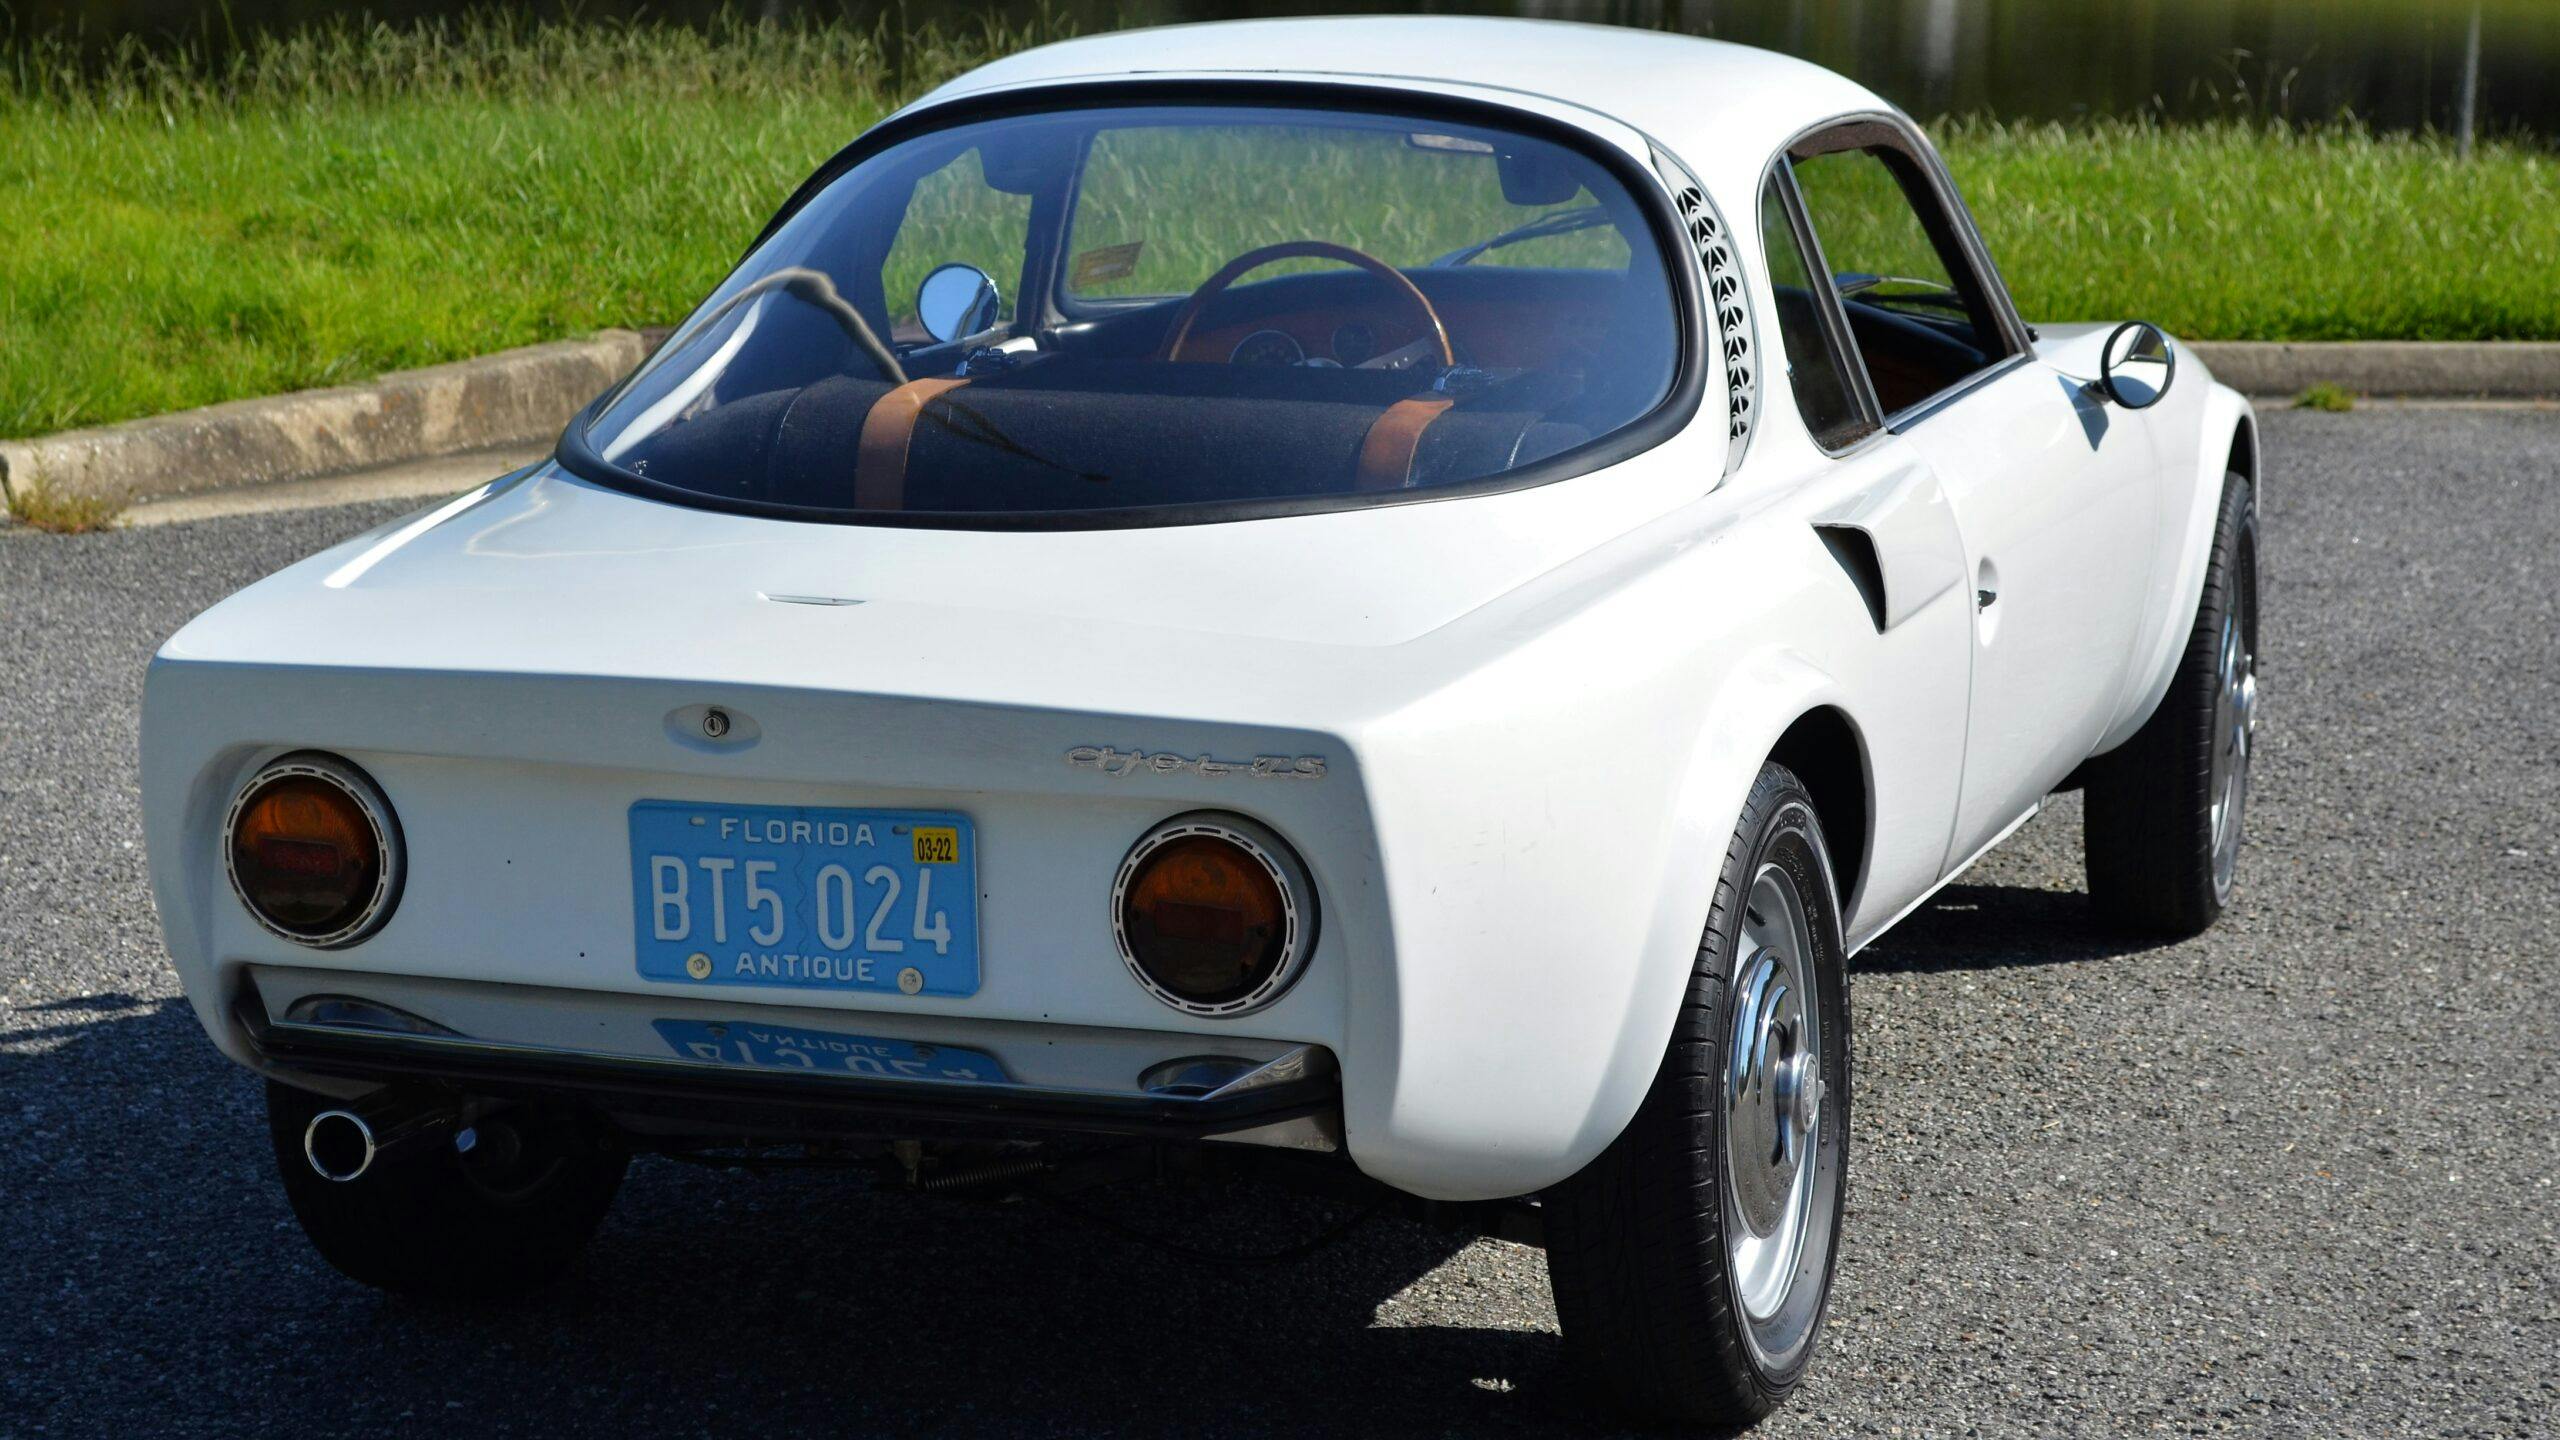 1966 Matra-Bonnet DJet 5S rear three quarter